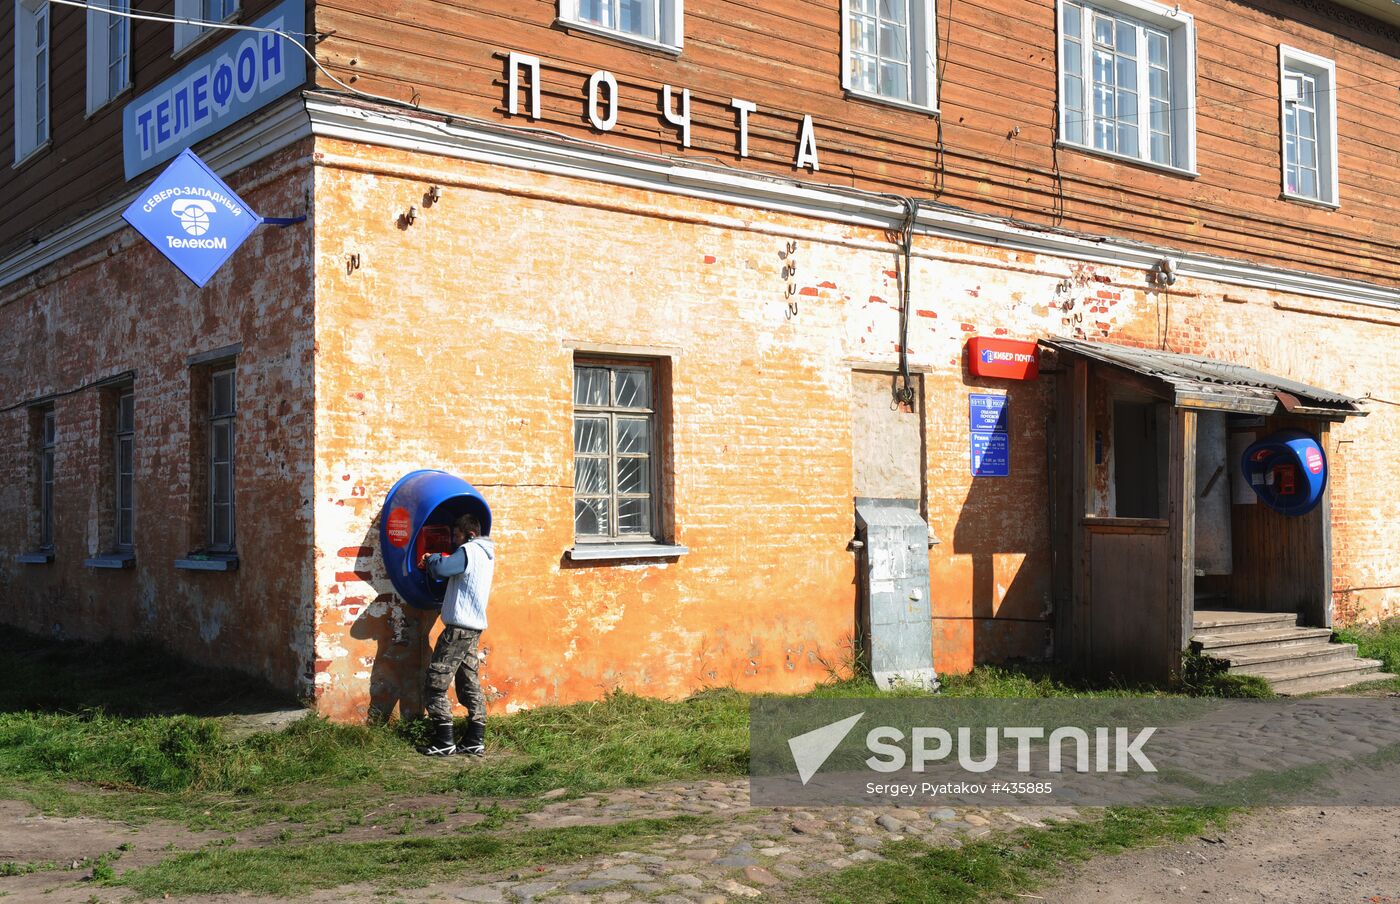 Post office in Solovki